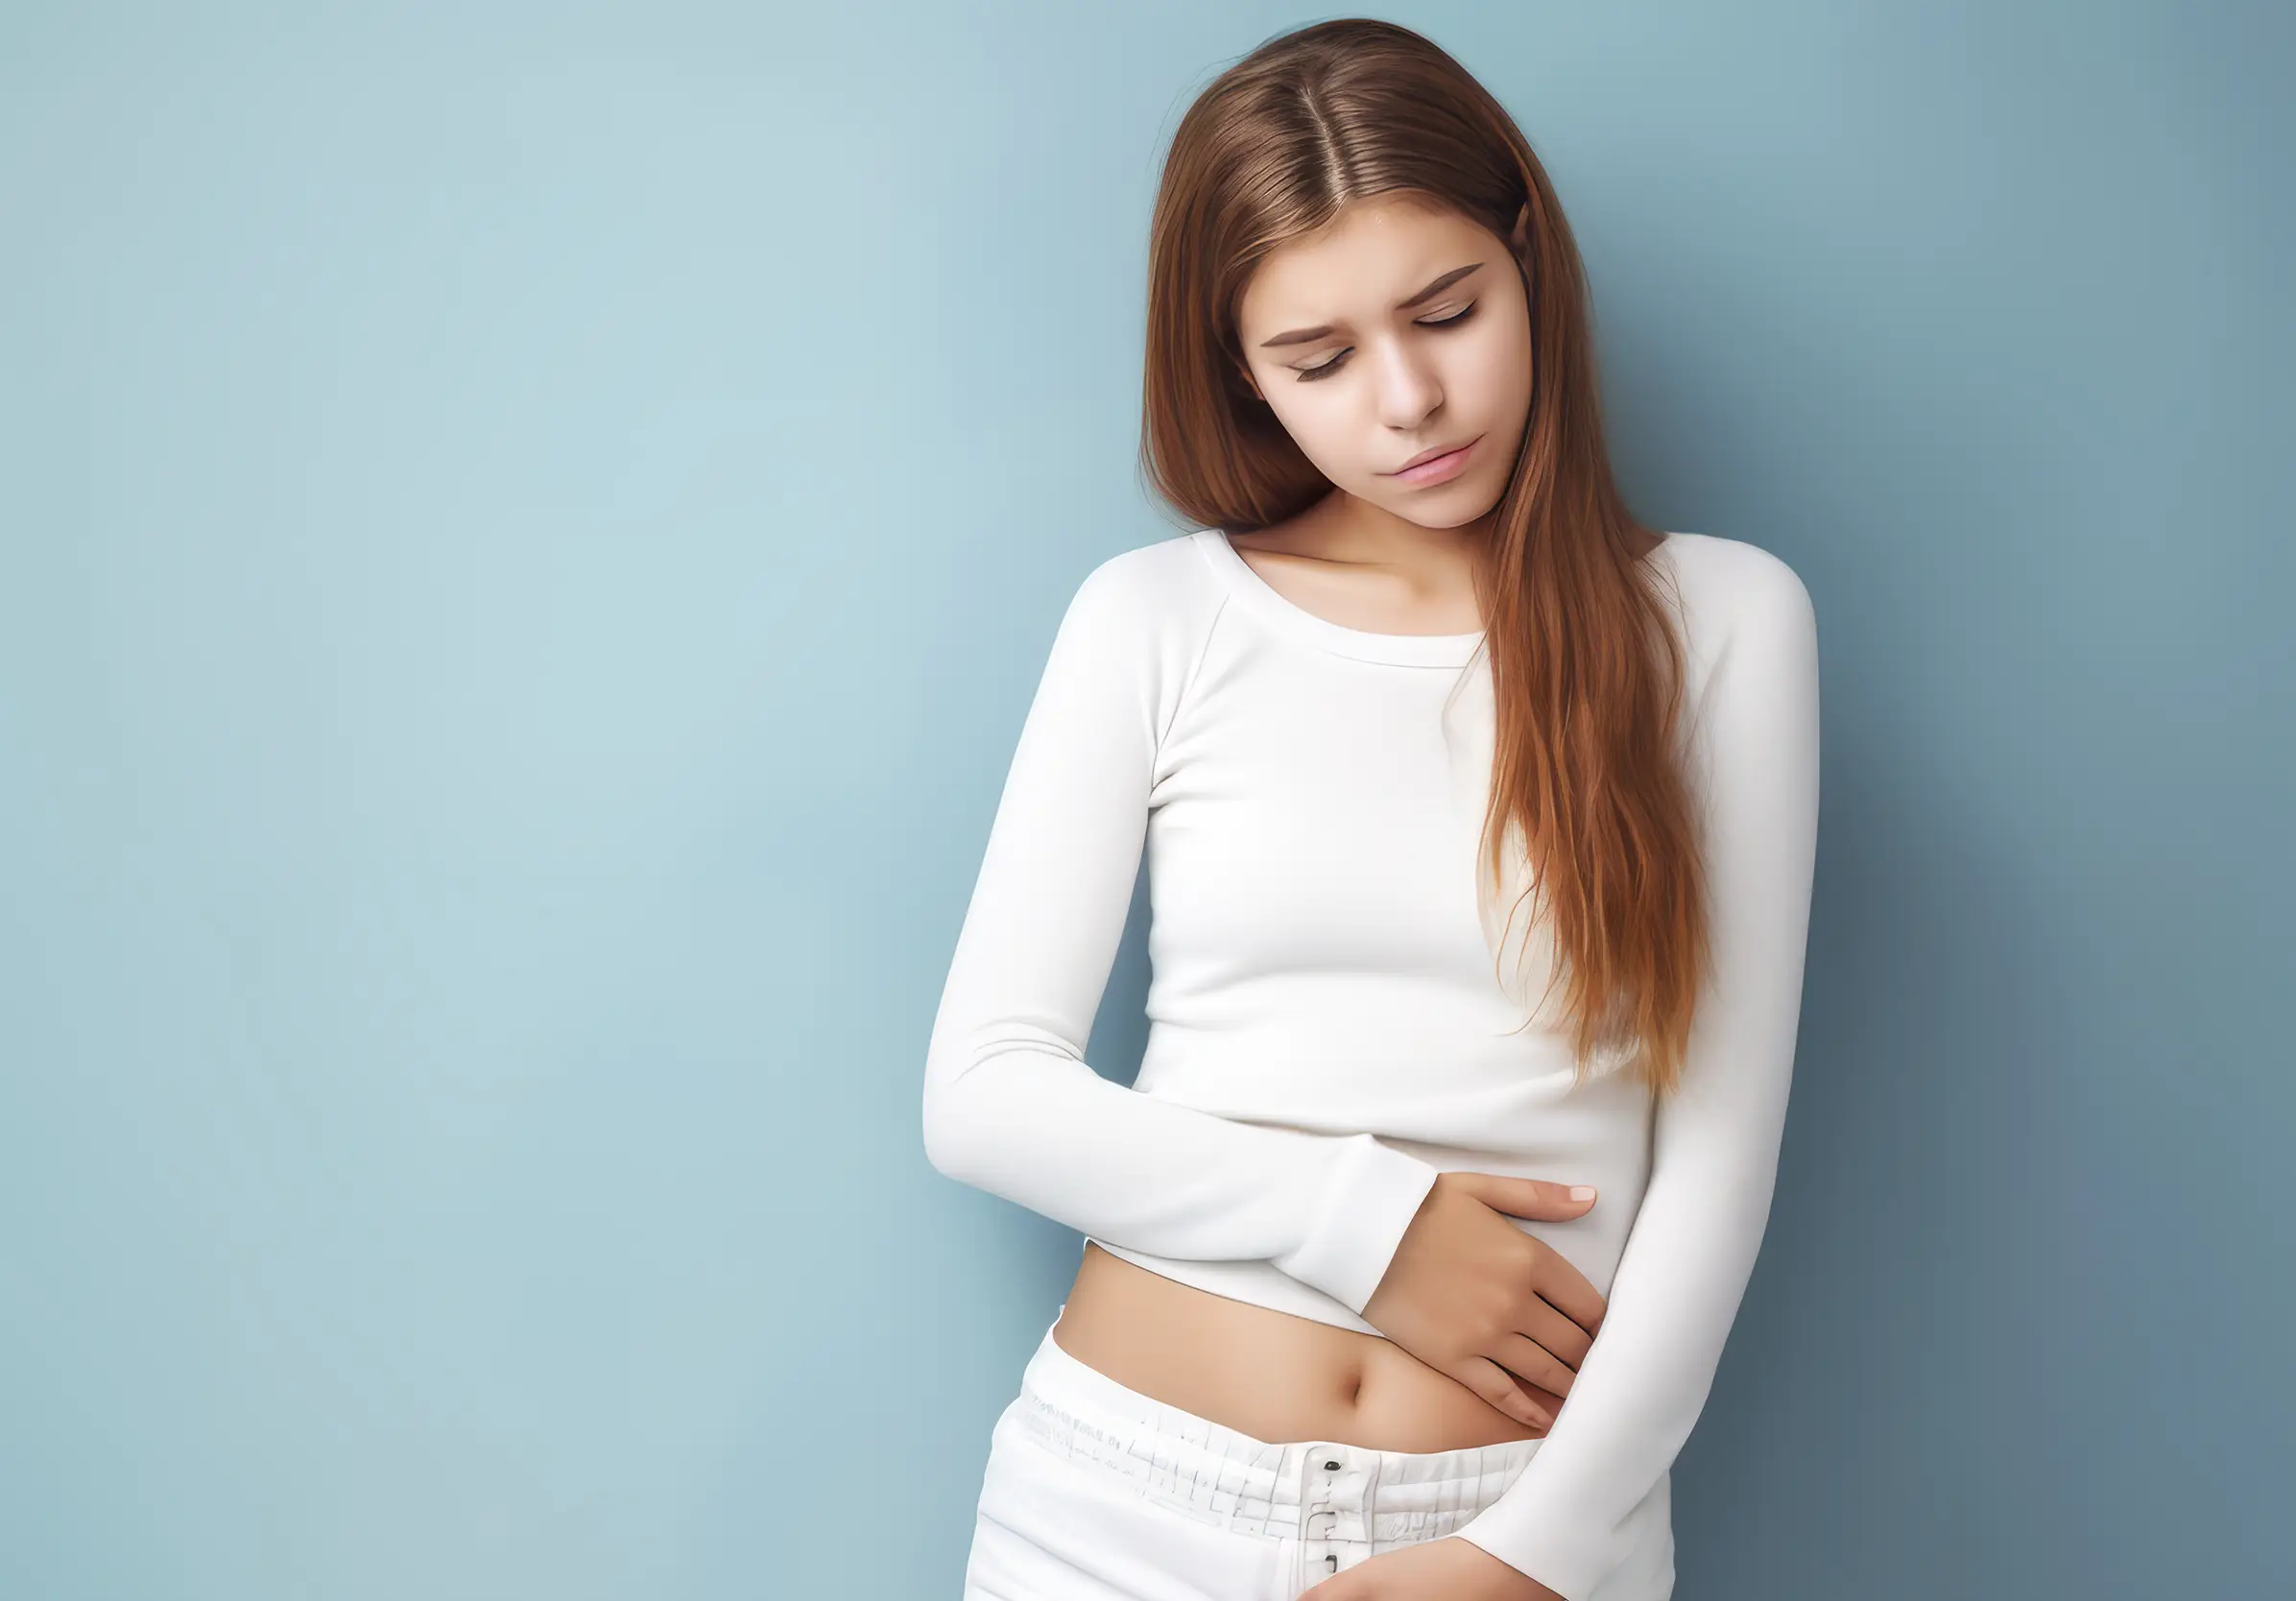 Sangramento menstrual excessivo… cólicas menstruais intensas… sensação de estar com a barriga maior! precisamos falar sobre MIOMAS!